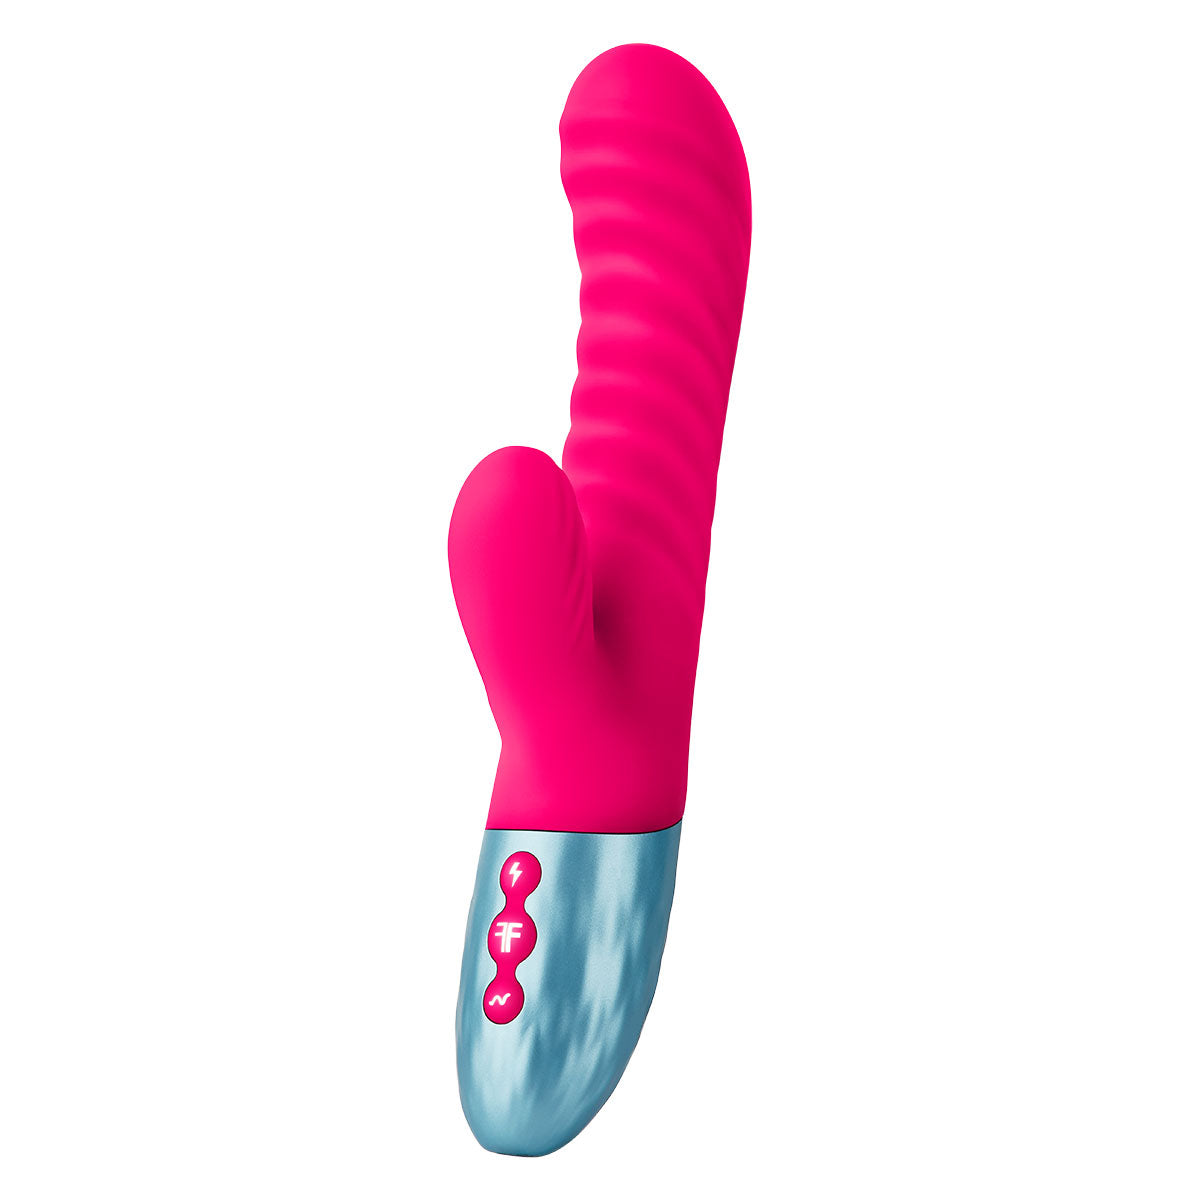 Femme Funn DELOLA Pink Mini Vibrator